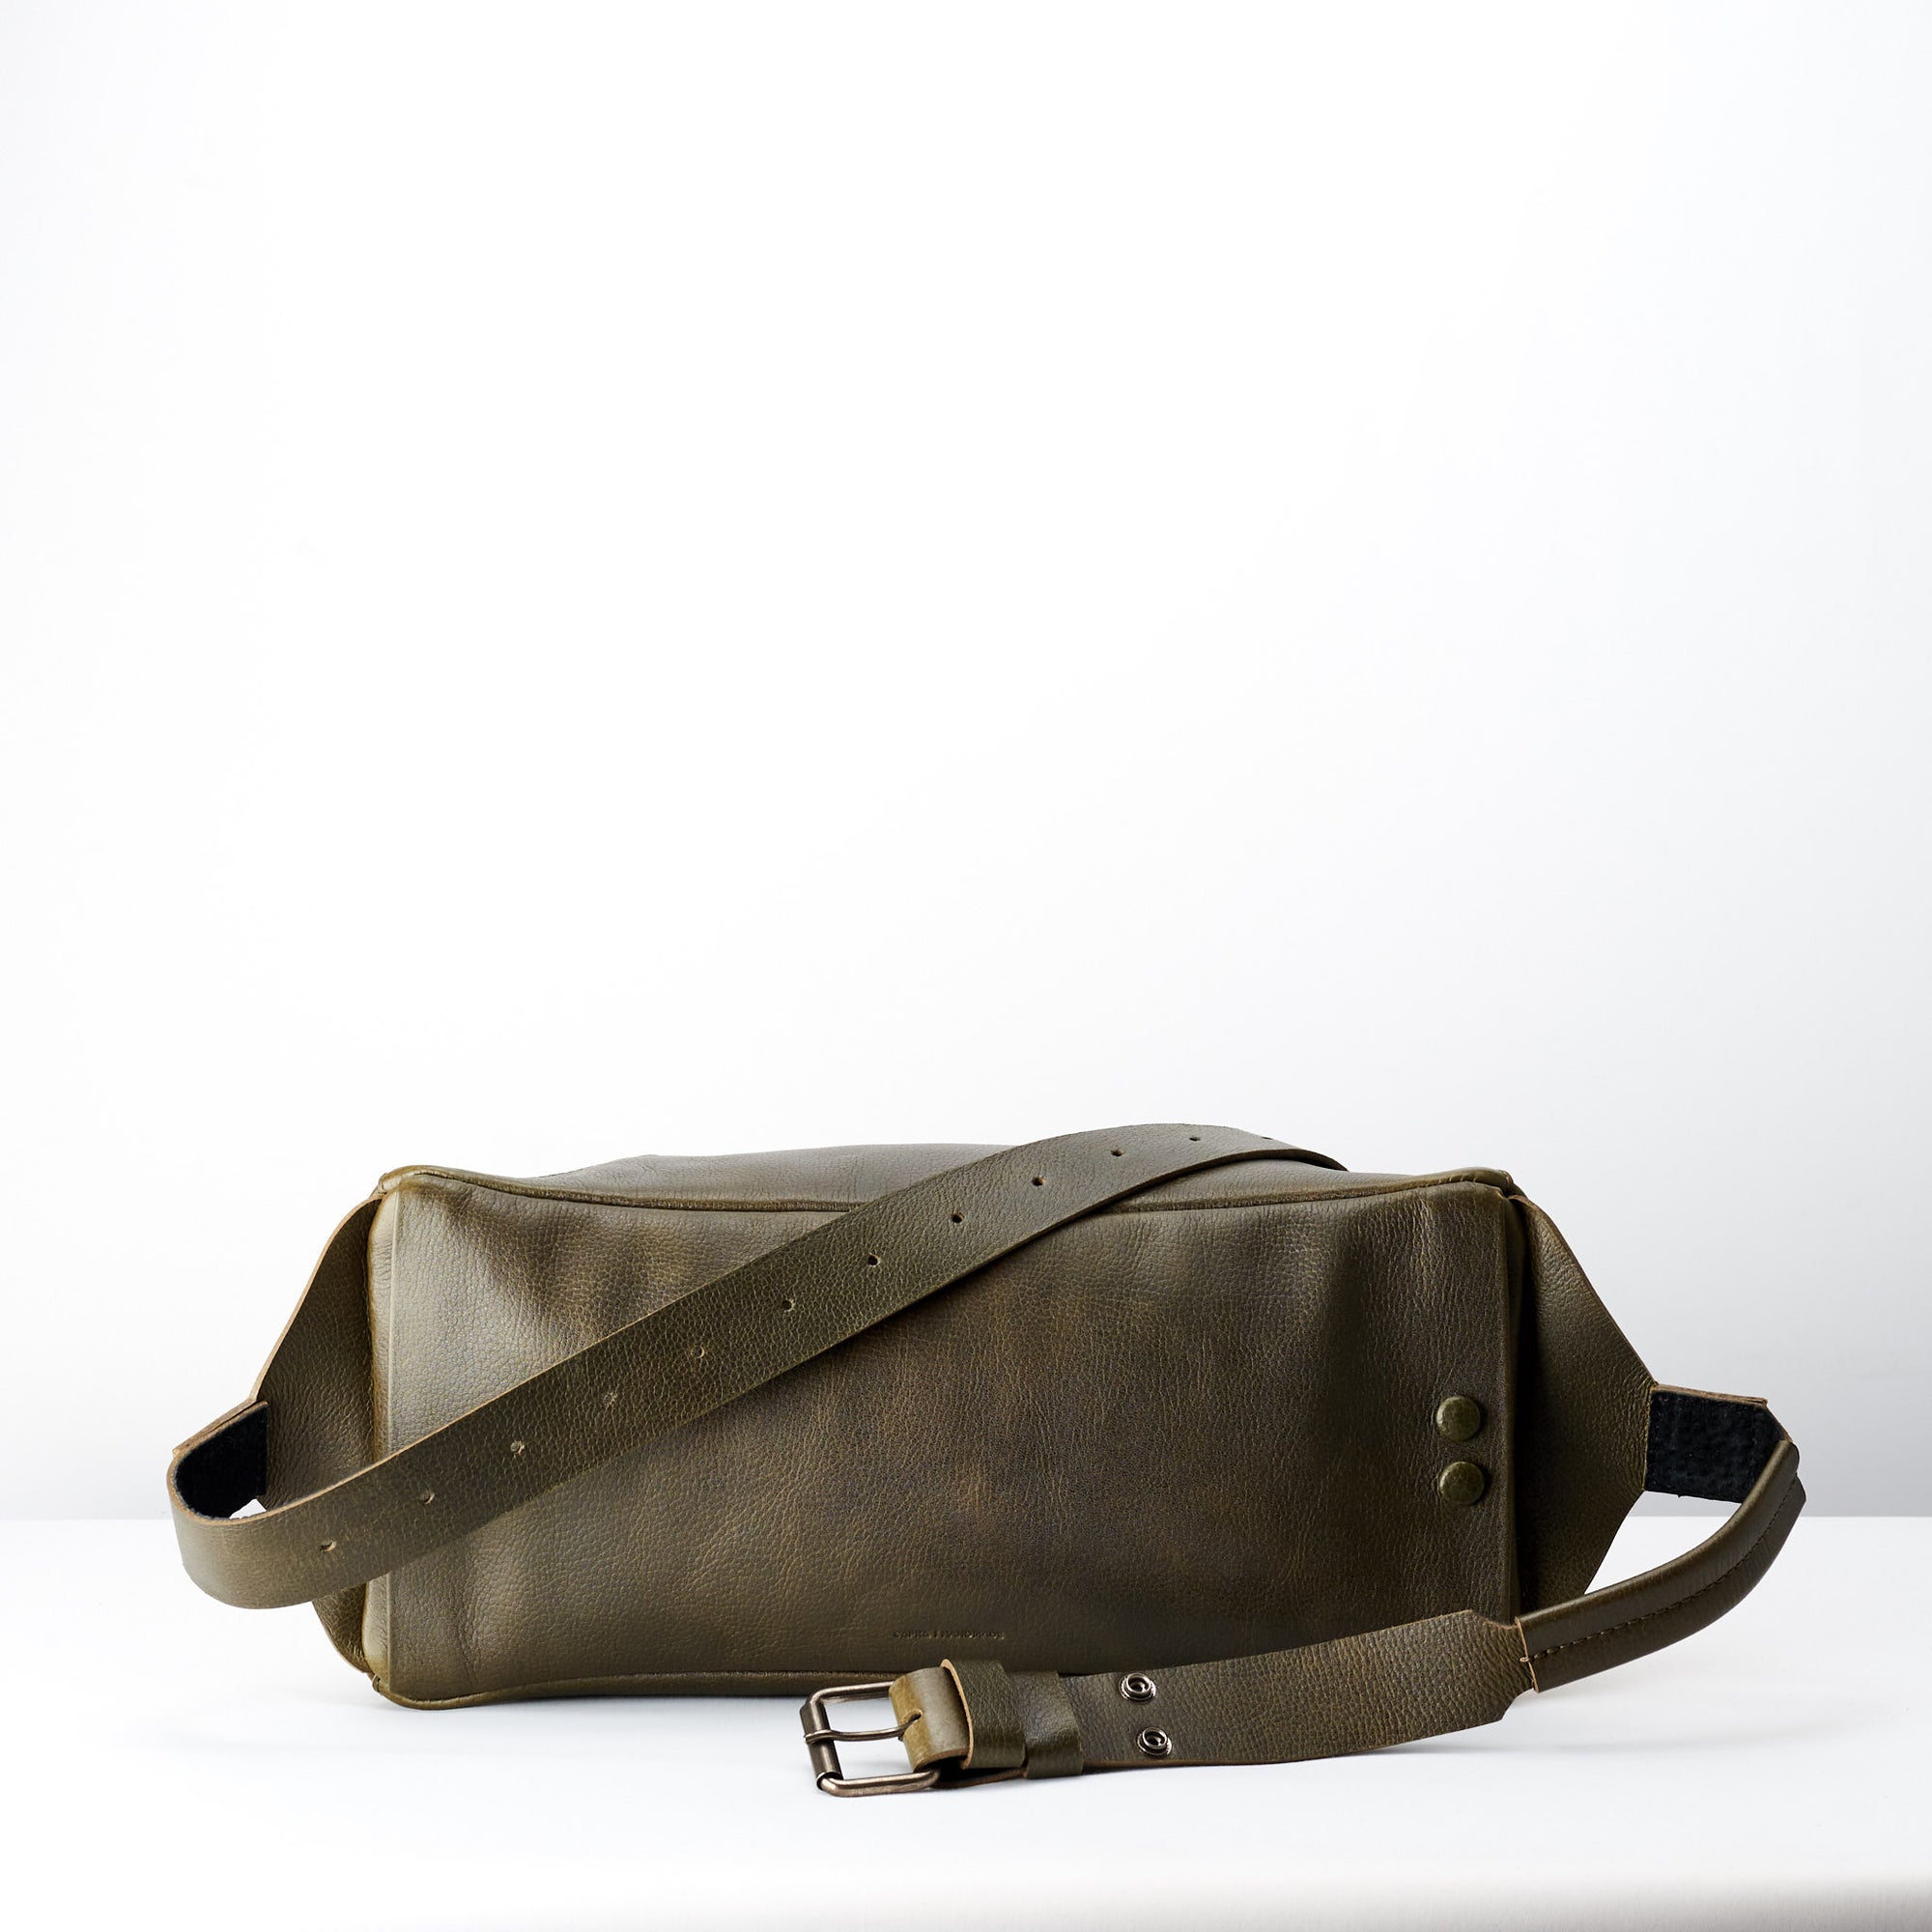 Back shoulder strap. Fenek green sling bag for Men by Capra Leather. Outdoors belt bag. 